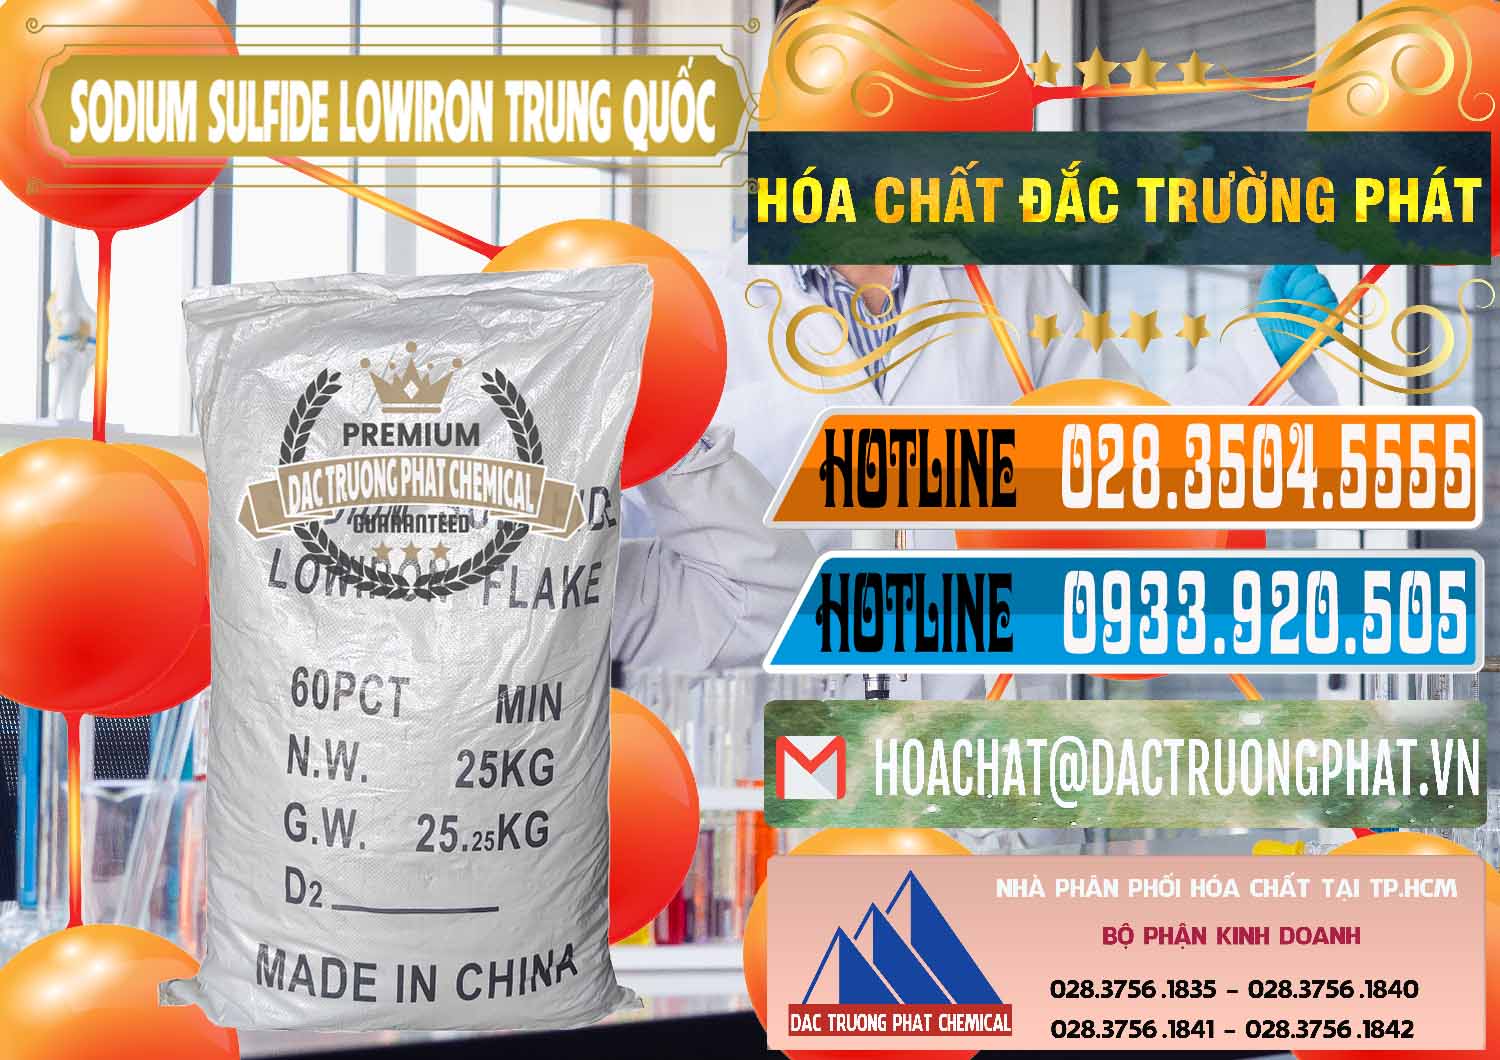 Công ty chuyên bán _ phân phối Sodium Sulfide NA2S – Đá Thối Lowiron Trung Quốc China - 0227 - Cung cấp & phân phối hóa chất tại TP.HCM - stmp.net